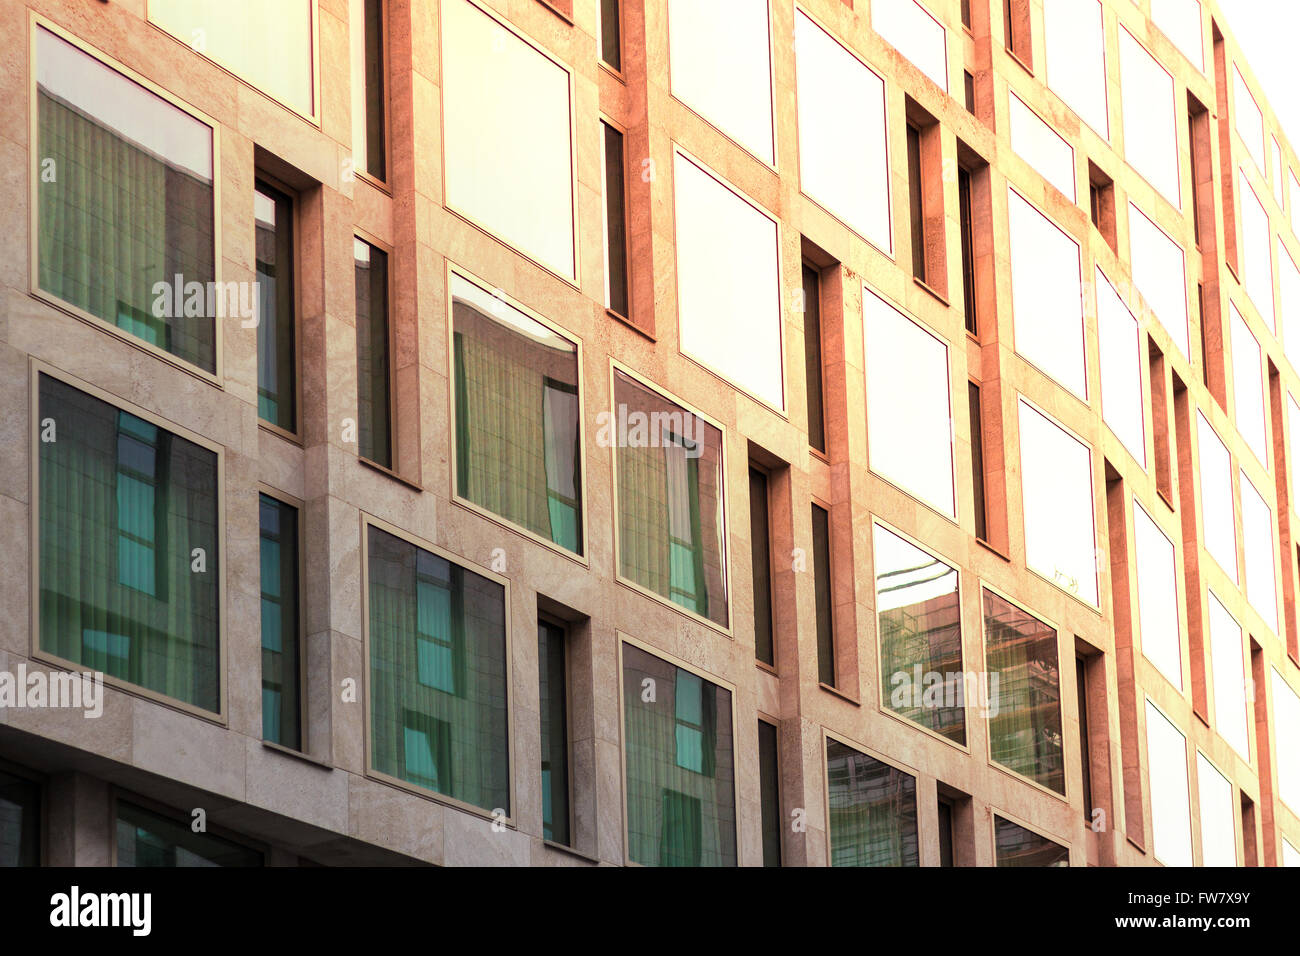 Fondo inmobiliario / Edificio moderno, con fachada exterior Foto de stock